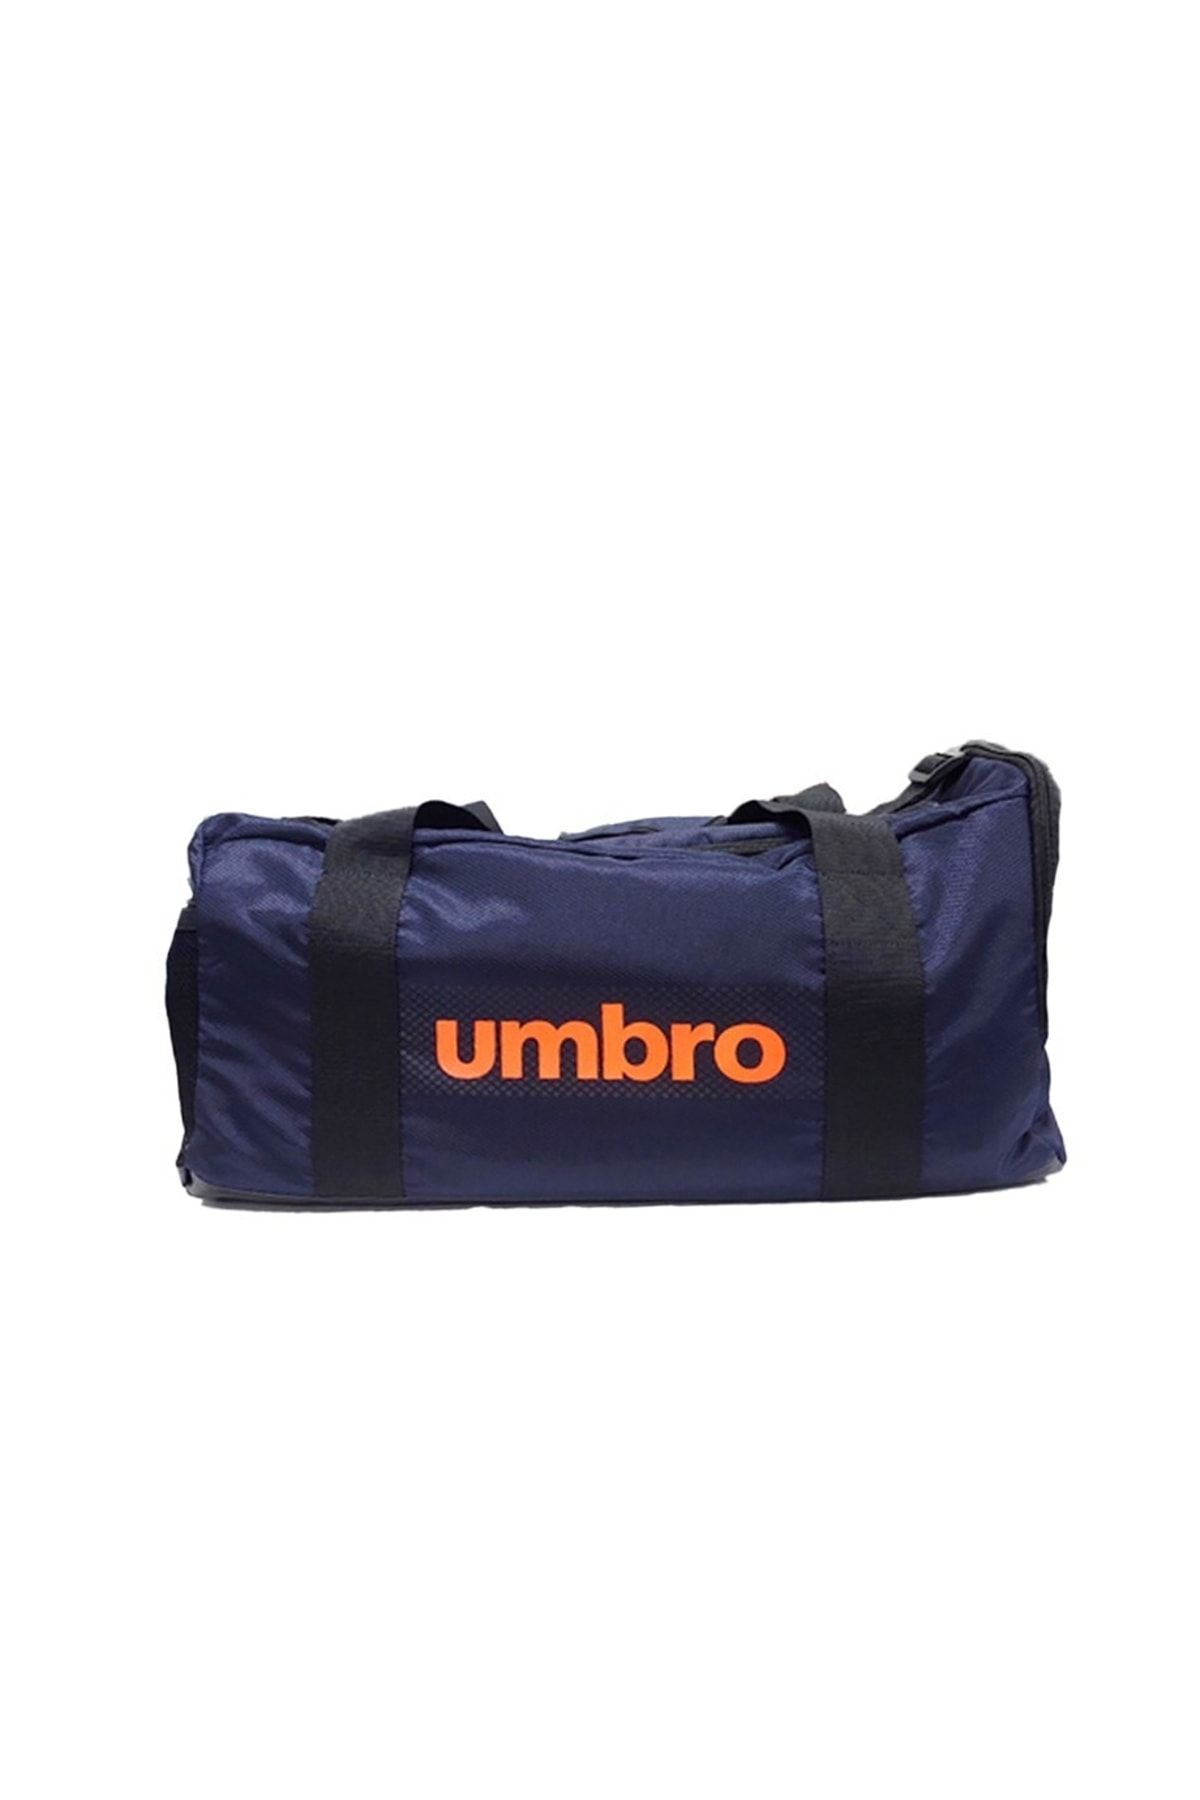 UMBRO Spor Antrenman Çantası Woo Sport Bag Tt-0036